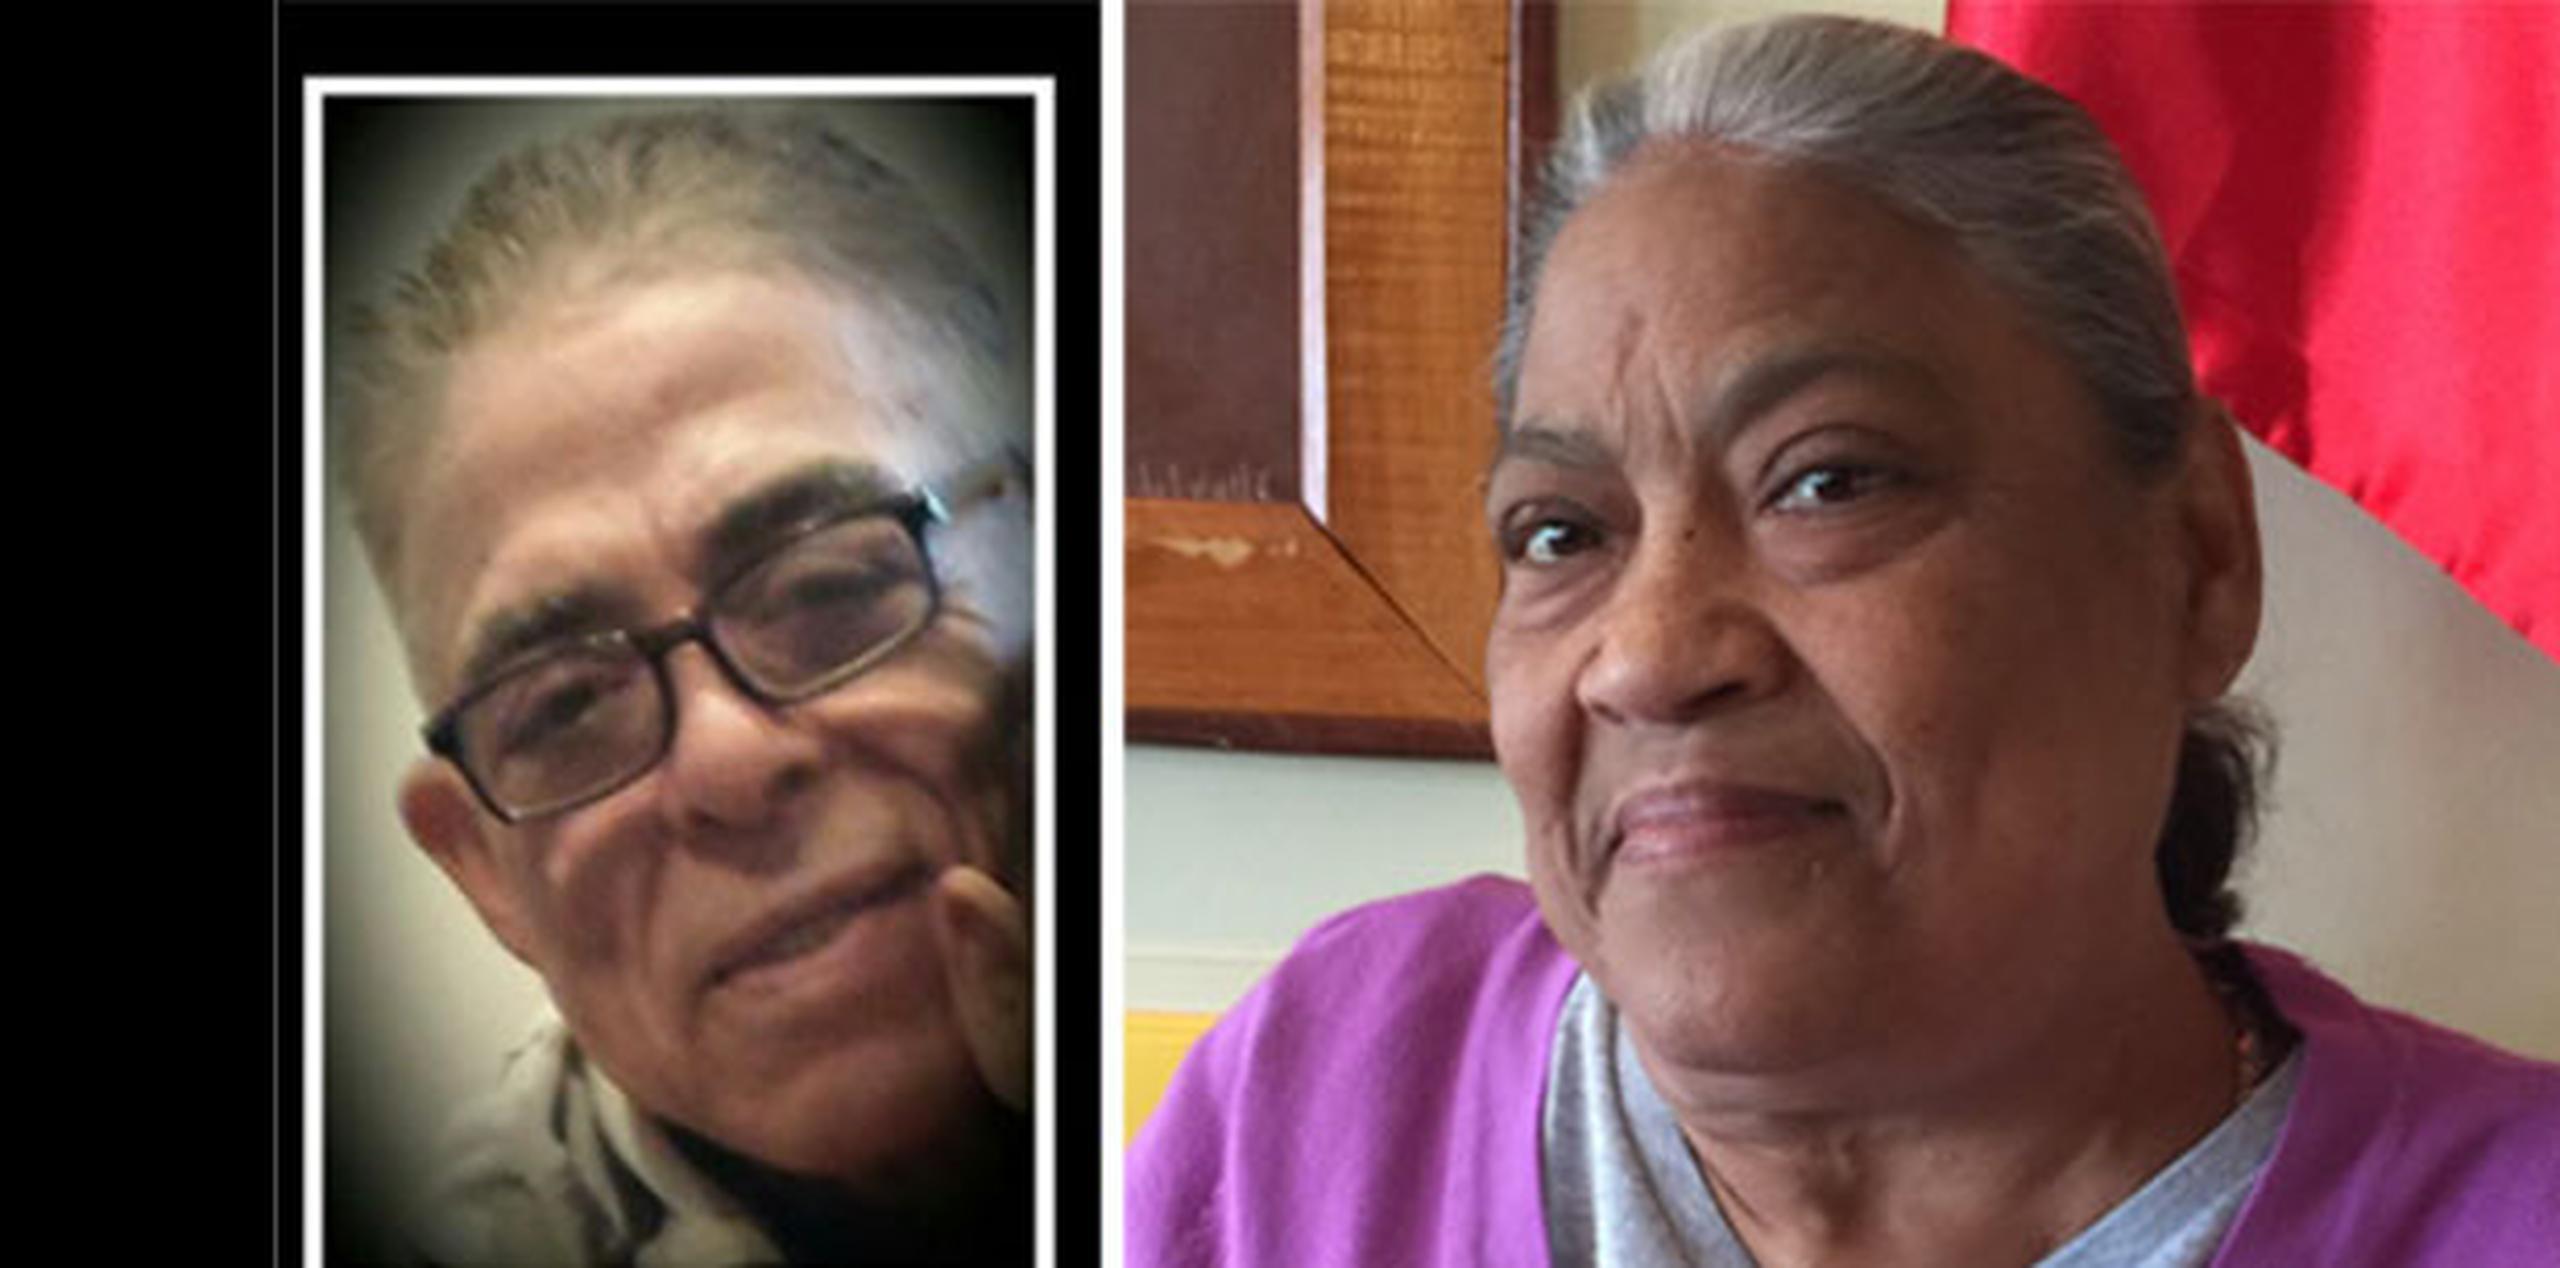 Manuel Rodríguez Arroyo y Margarita Feliciano Silva fueron reportados desaparecidos anoche por sus familiares. (Suministradas)